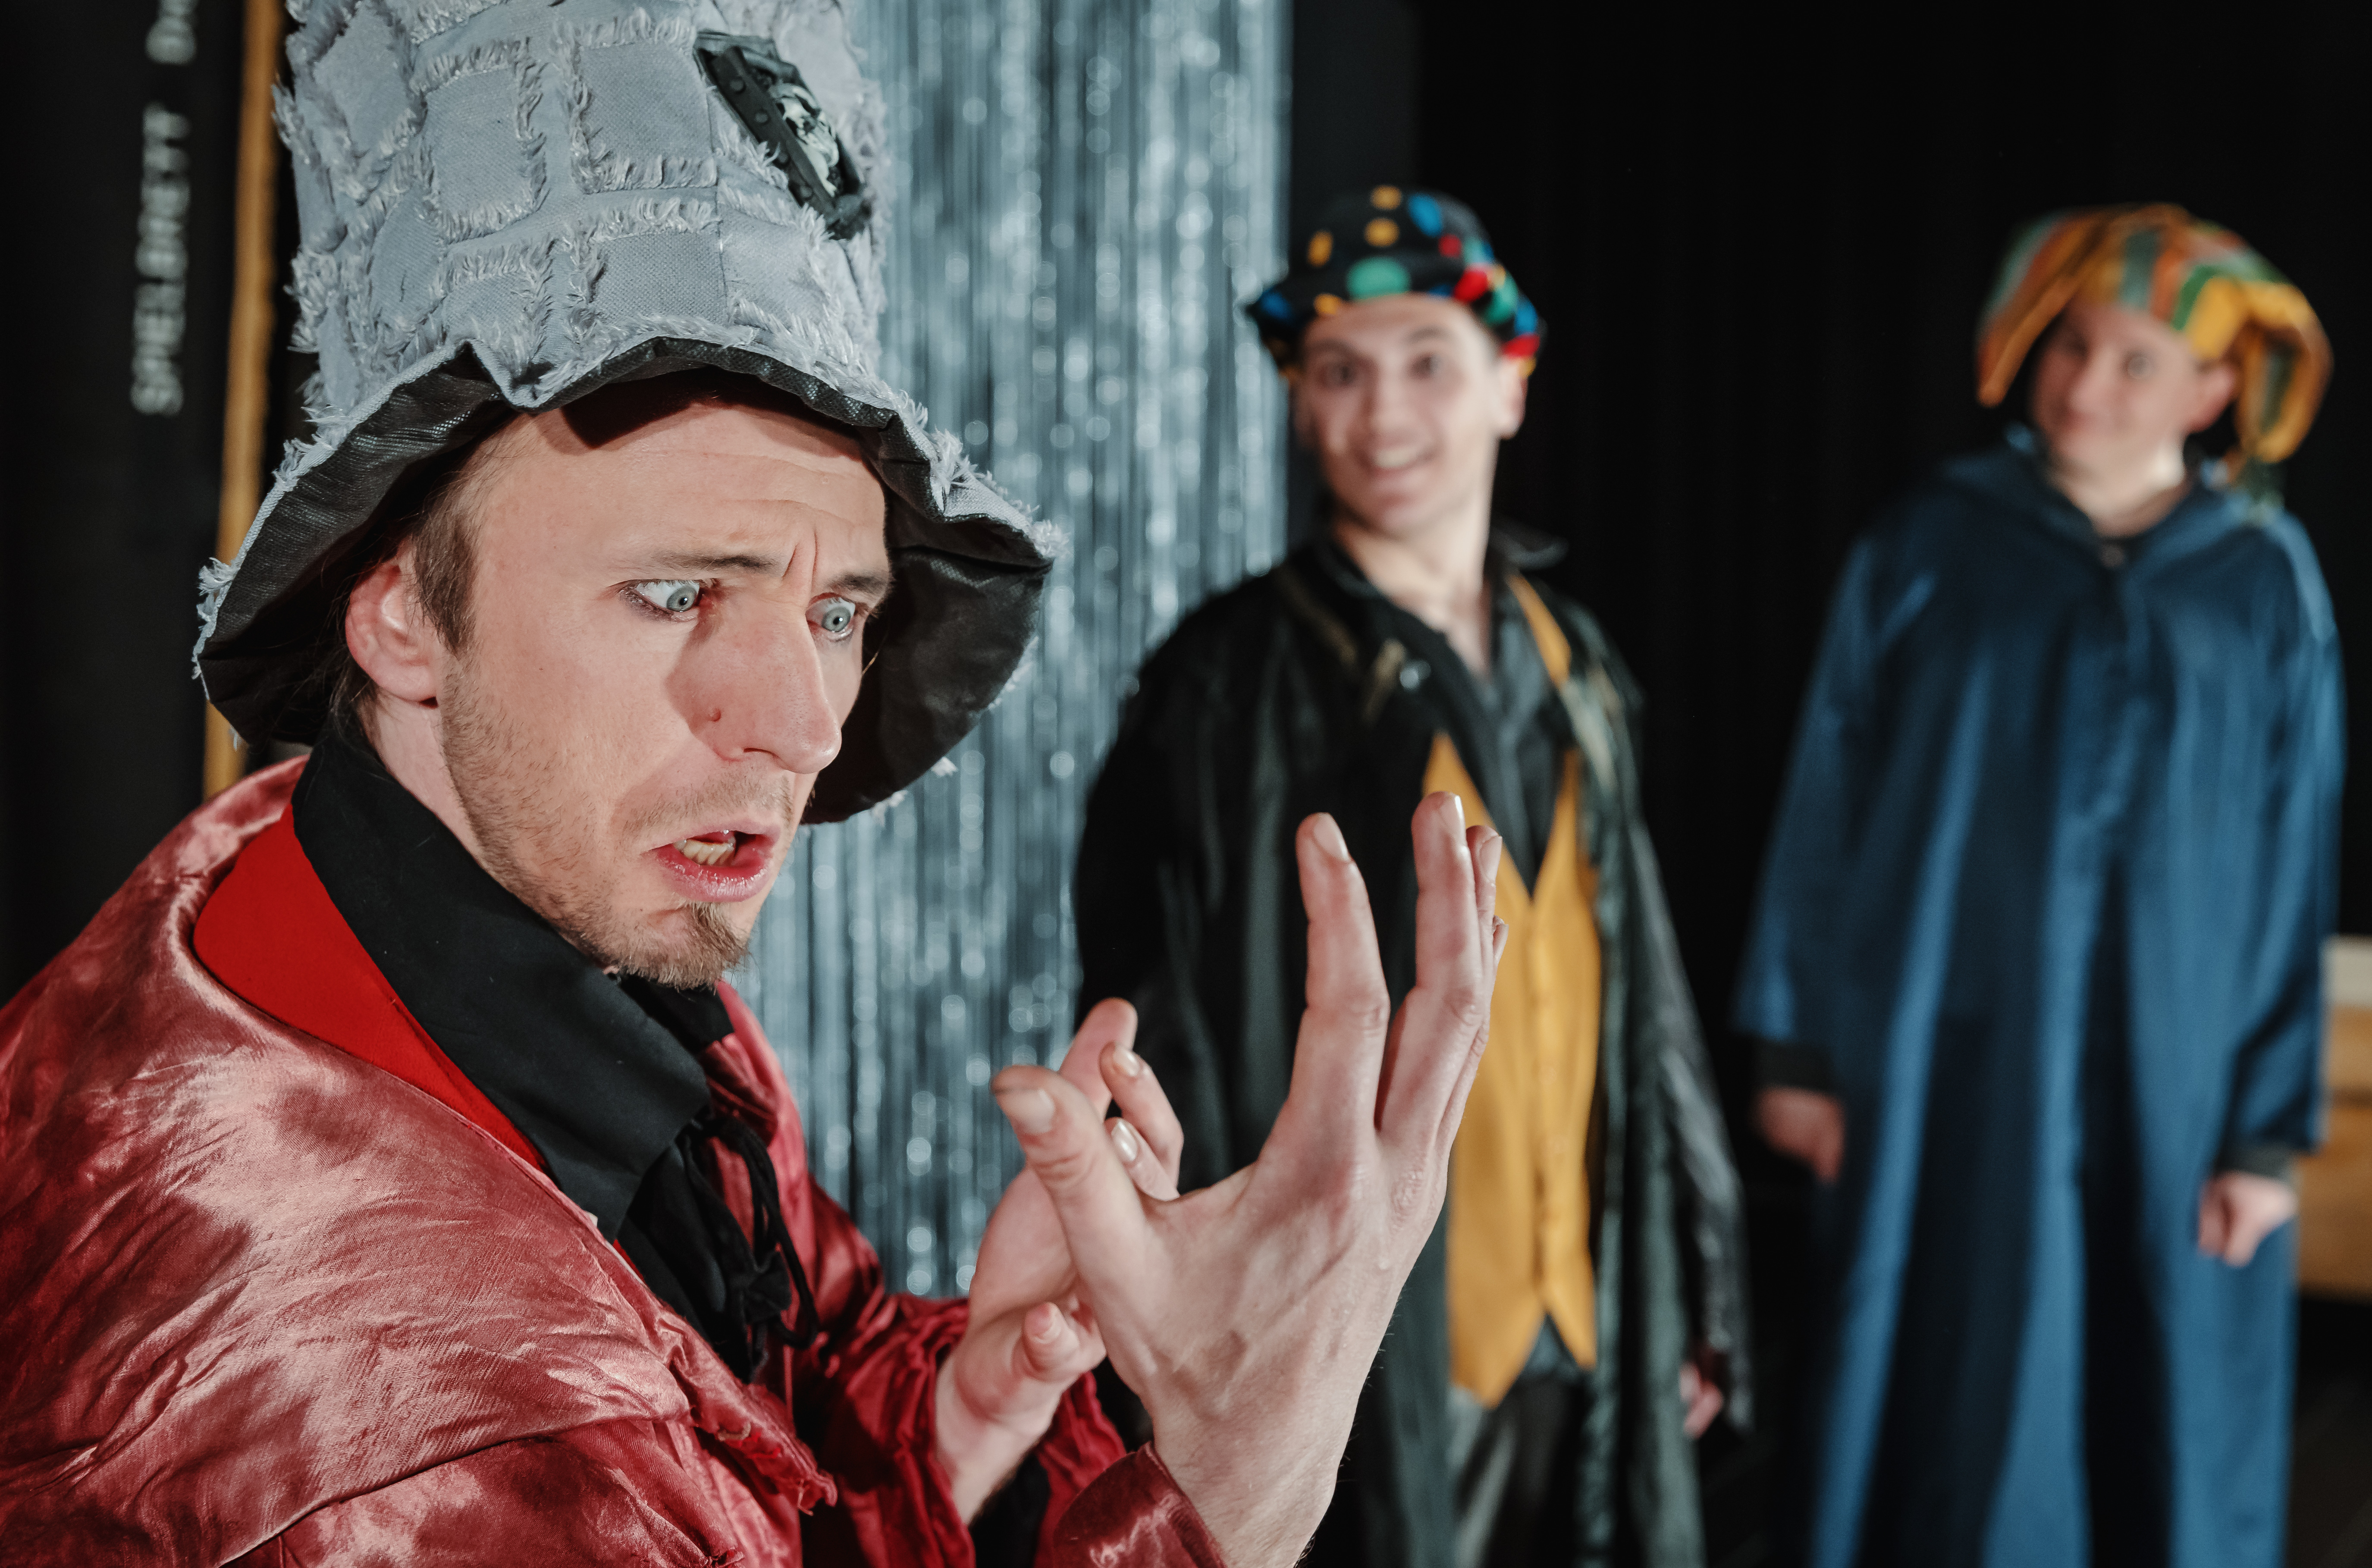 Ein in rote Seidenrobe und grauen Stoffzylinder gekleideter Schauspieler schaut ausdrucksstark in seine geöffnete Hand, im Hintergrund sind zwei weitere Schauspieler zu erkennen, die ihn anblicken.